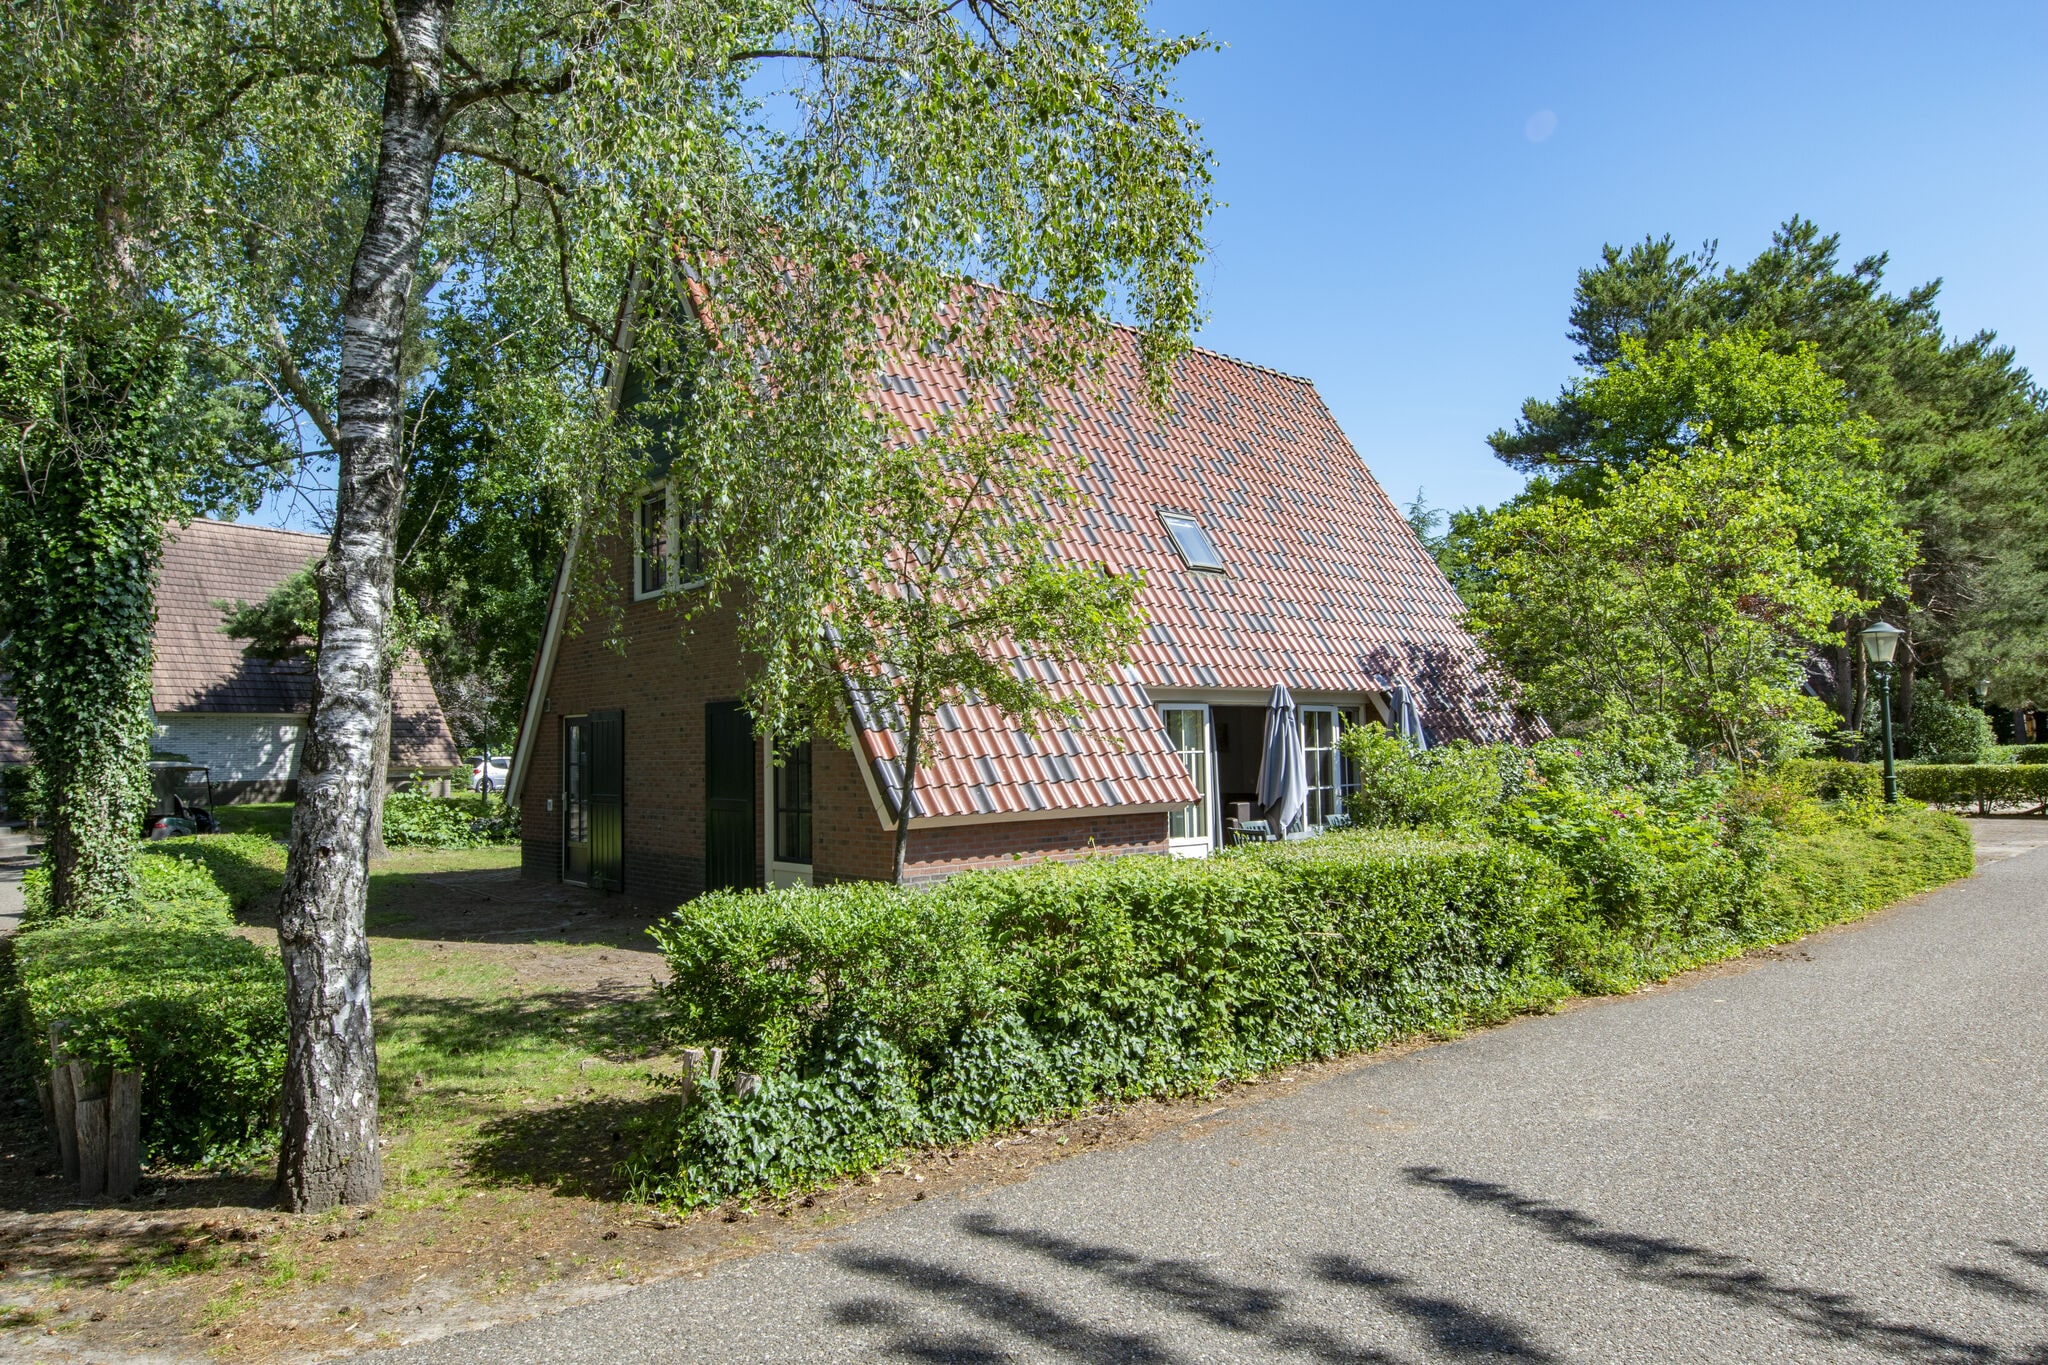 Maison rénovée avec wellness, ville de Breda à 10 km.